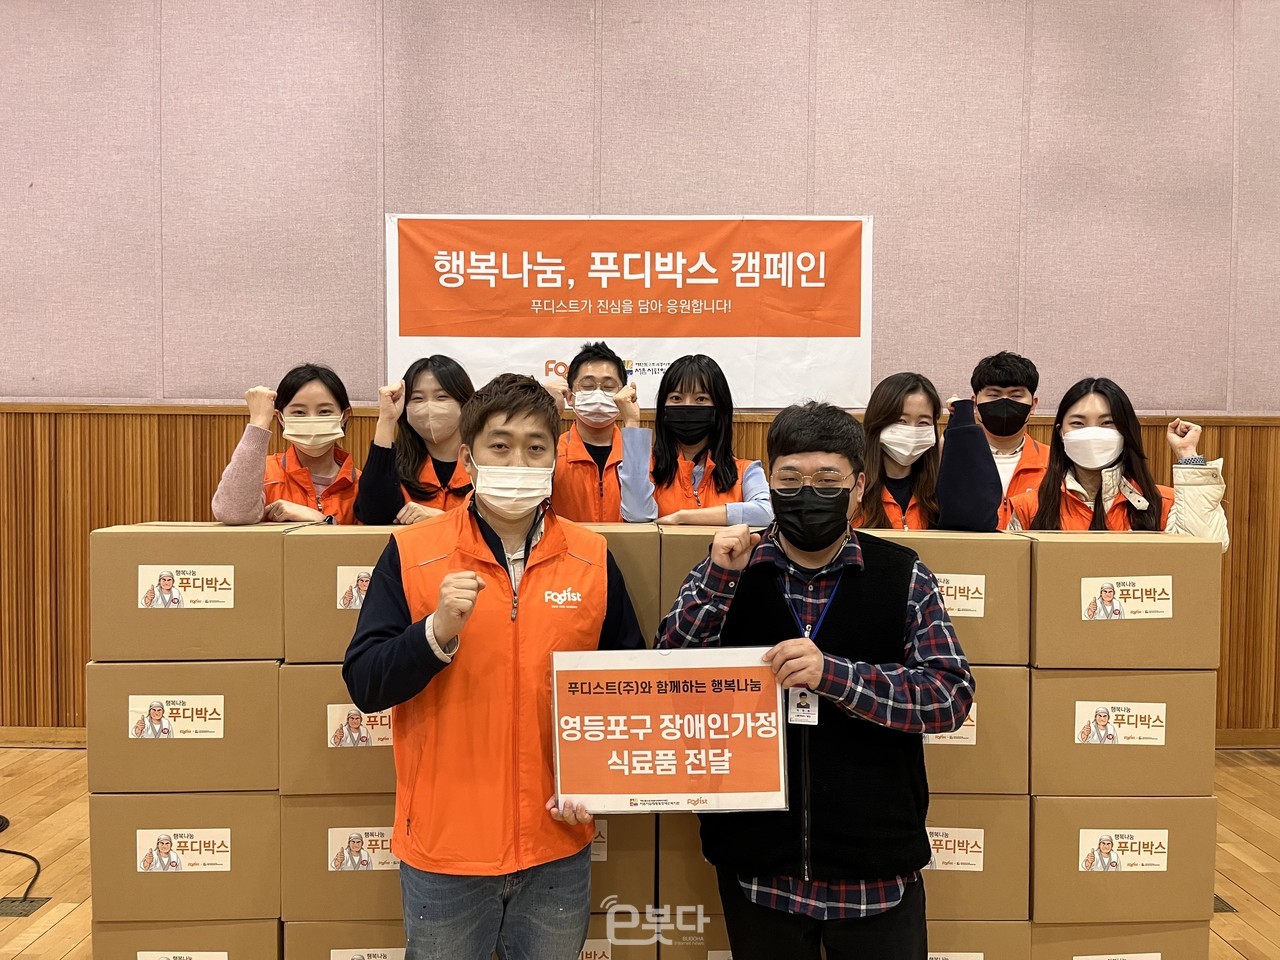 서울시립영등포장애인복지관(관장 최종환)이 3월 25일 푸디스트(주)와 함께 나눔 행사를 진행했다.